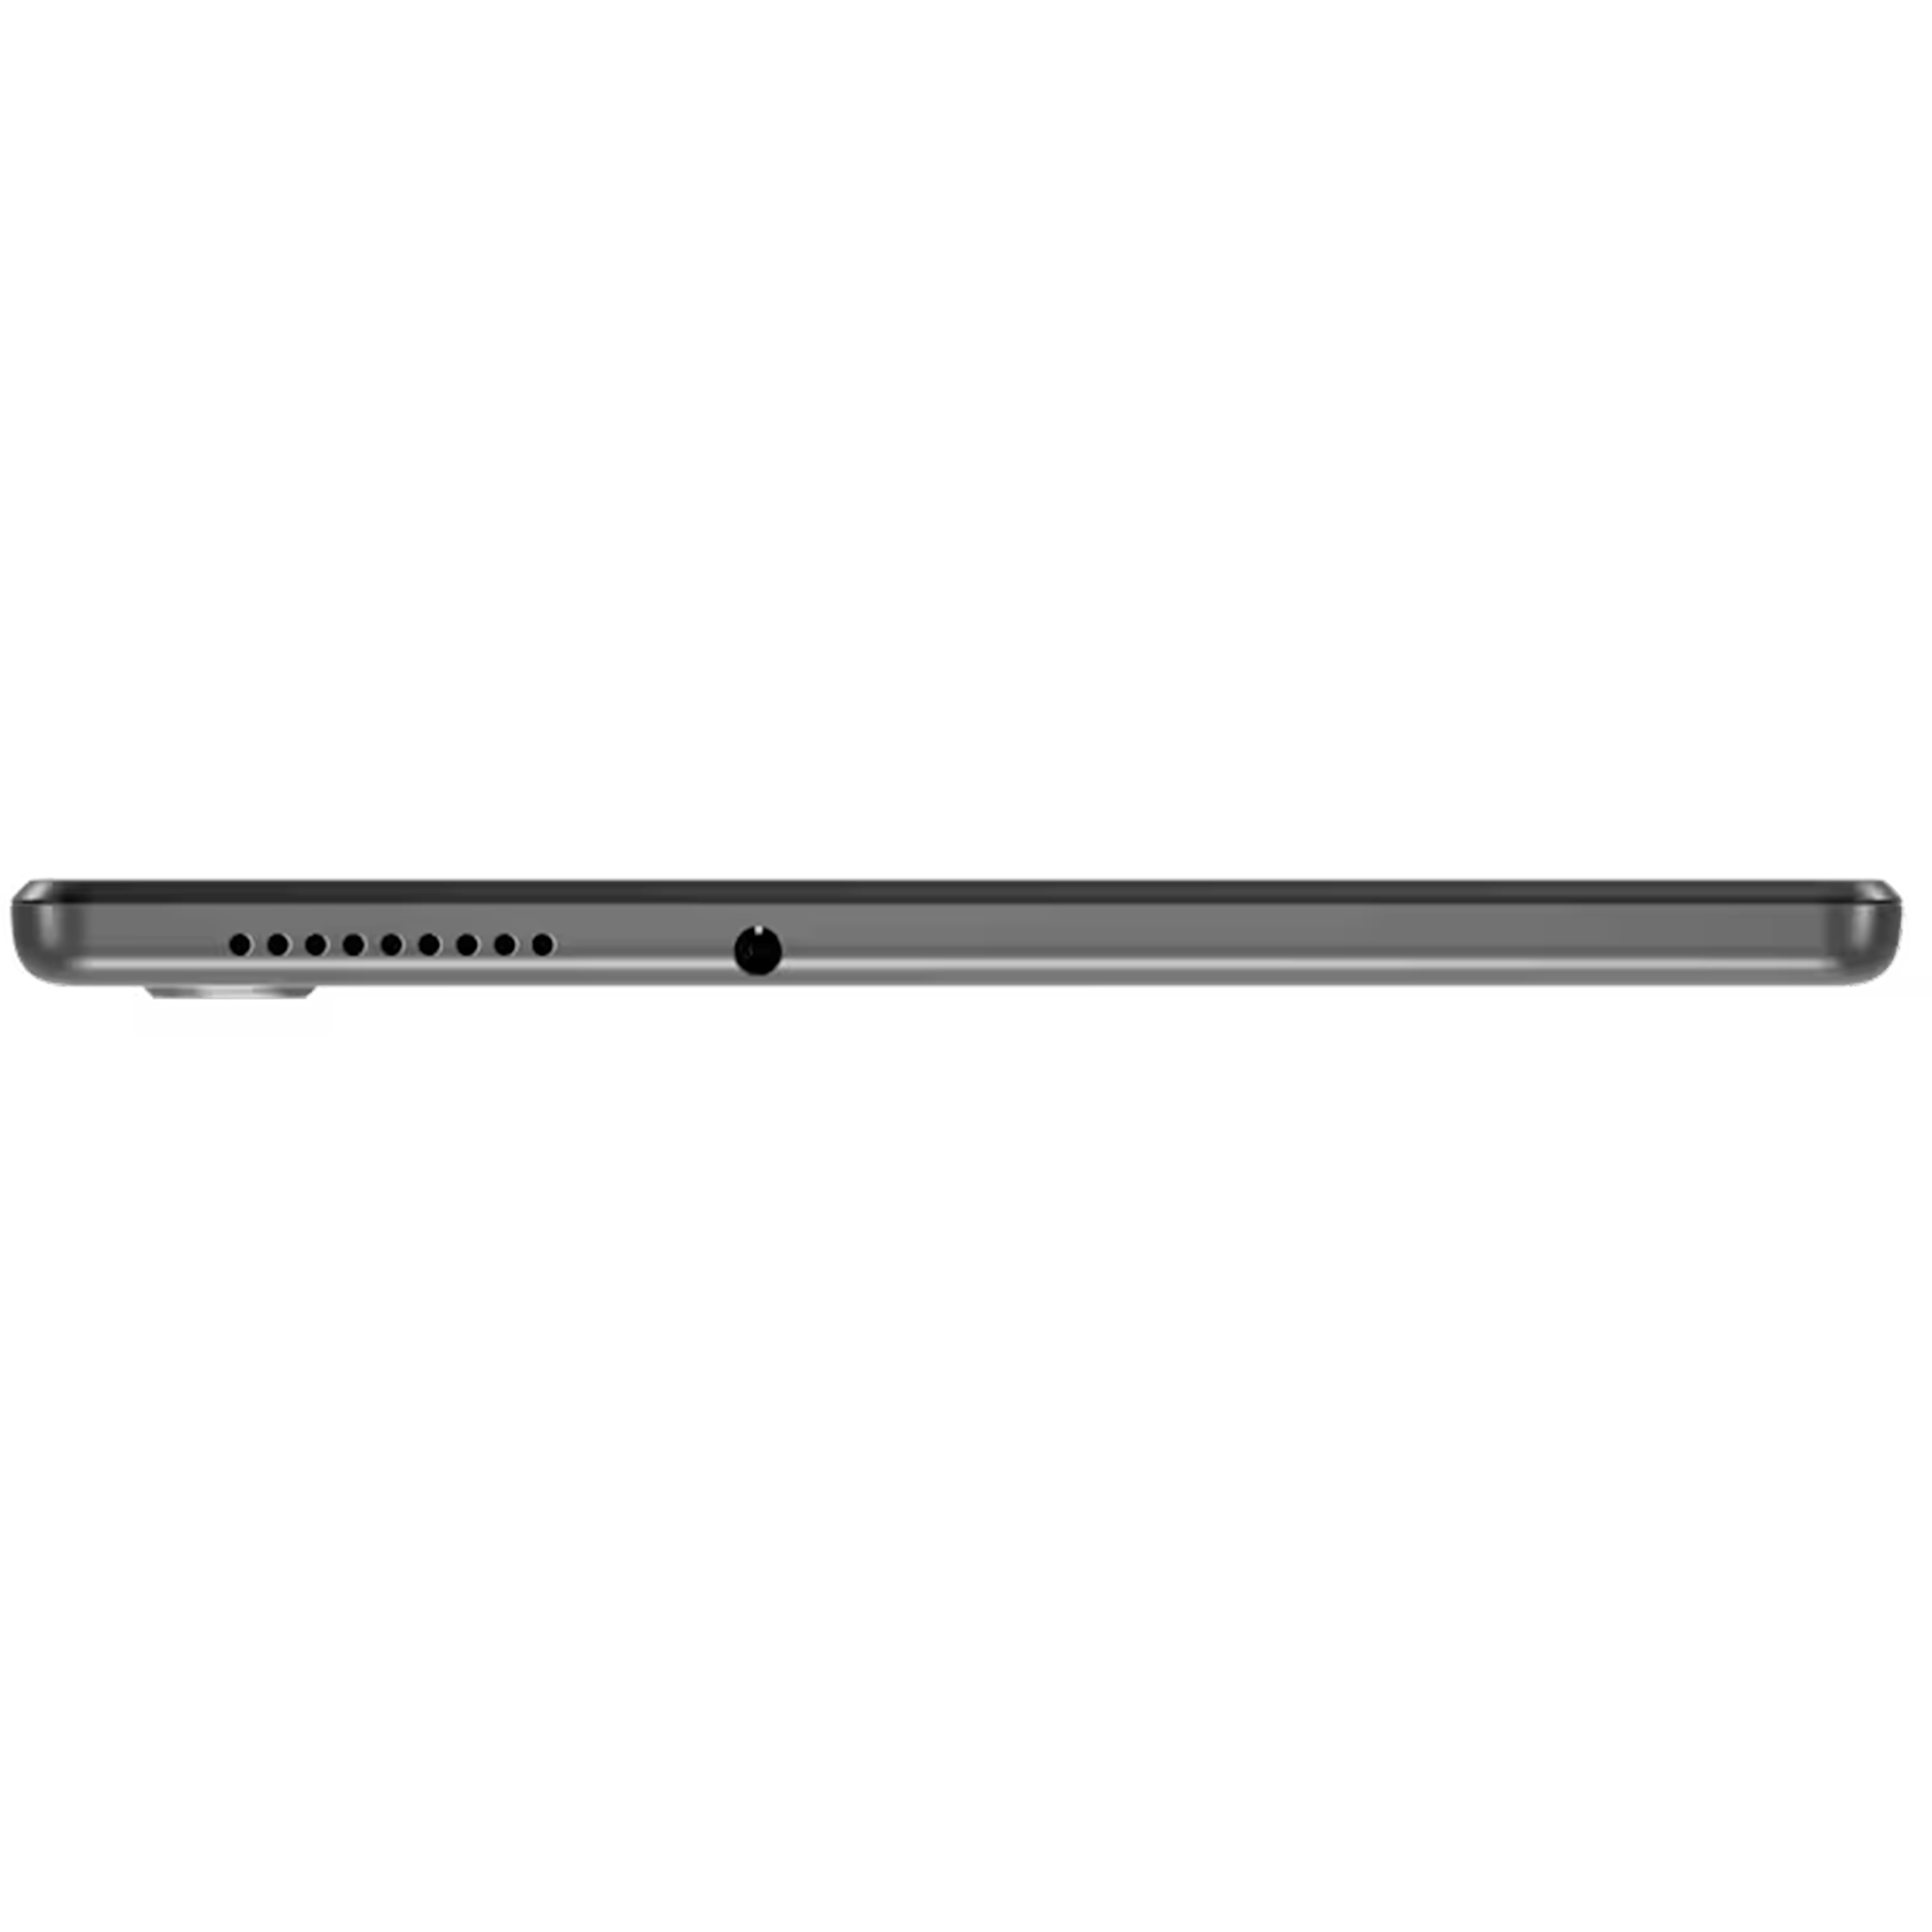 טאבלט Lenovo Tab M10 HD (2nd Gen) ZA6W0225IL X306F 10.1